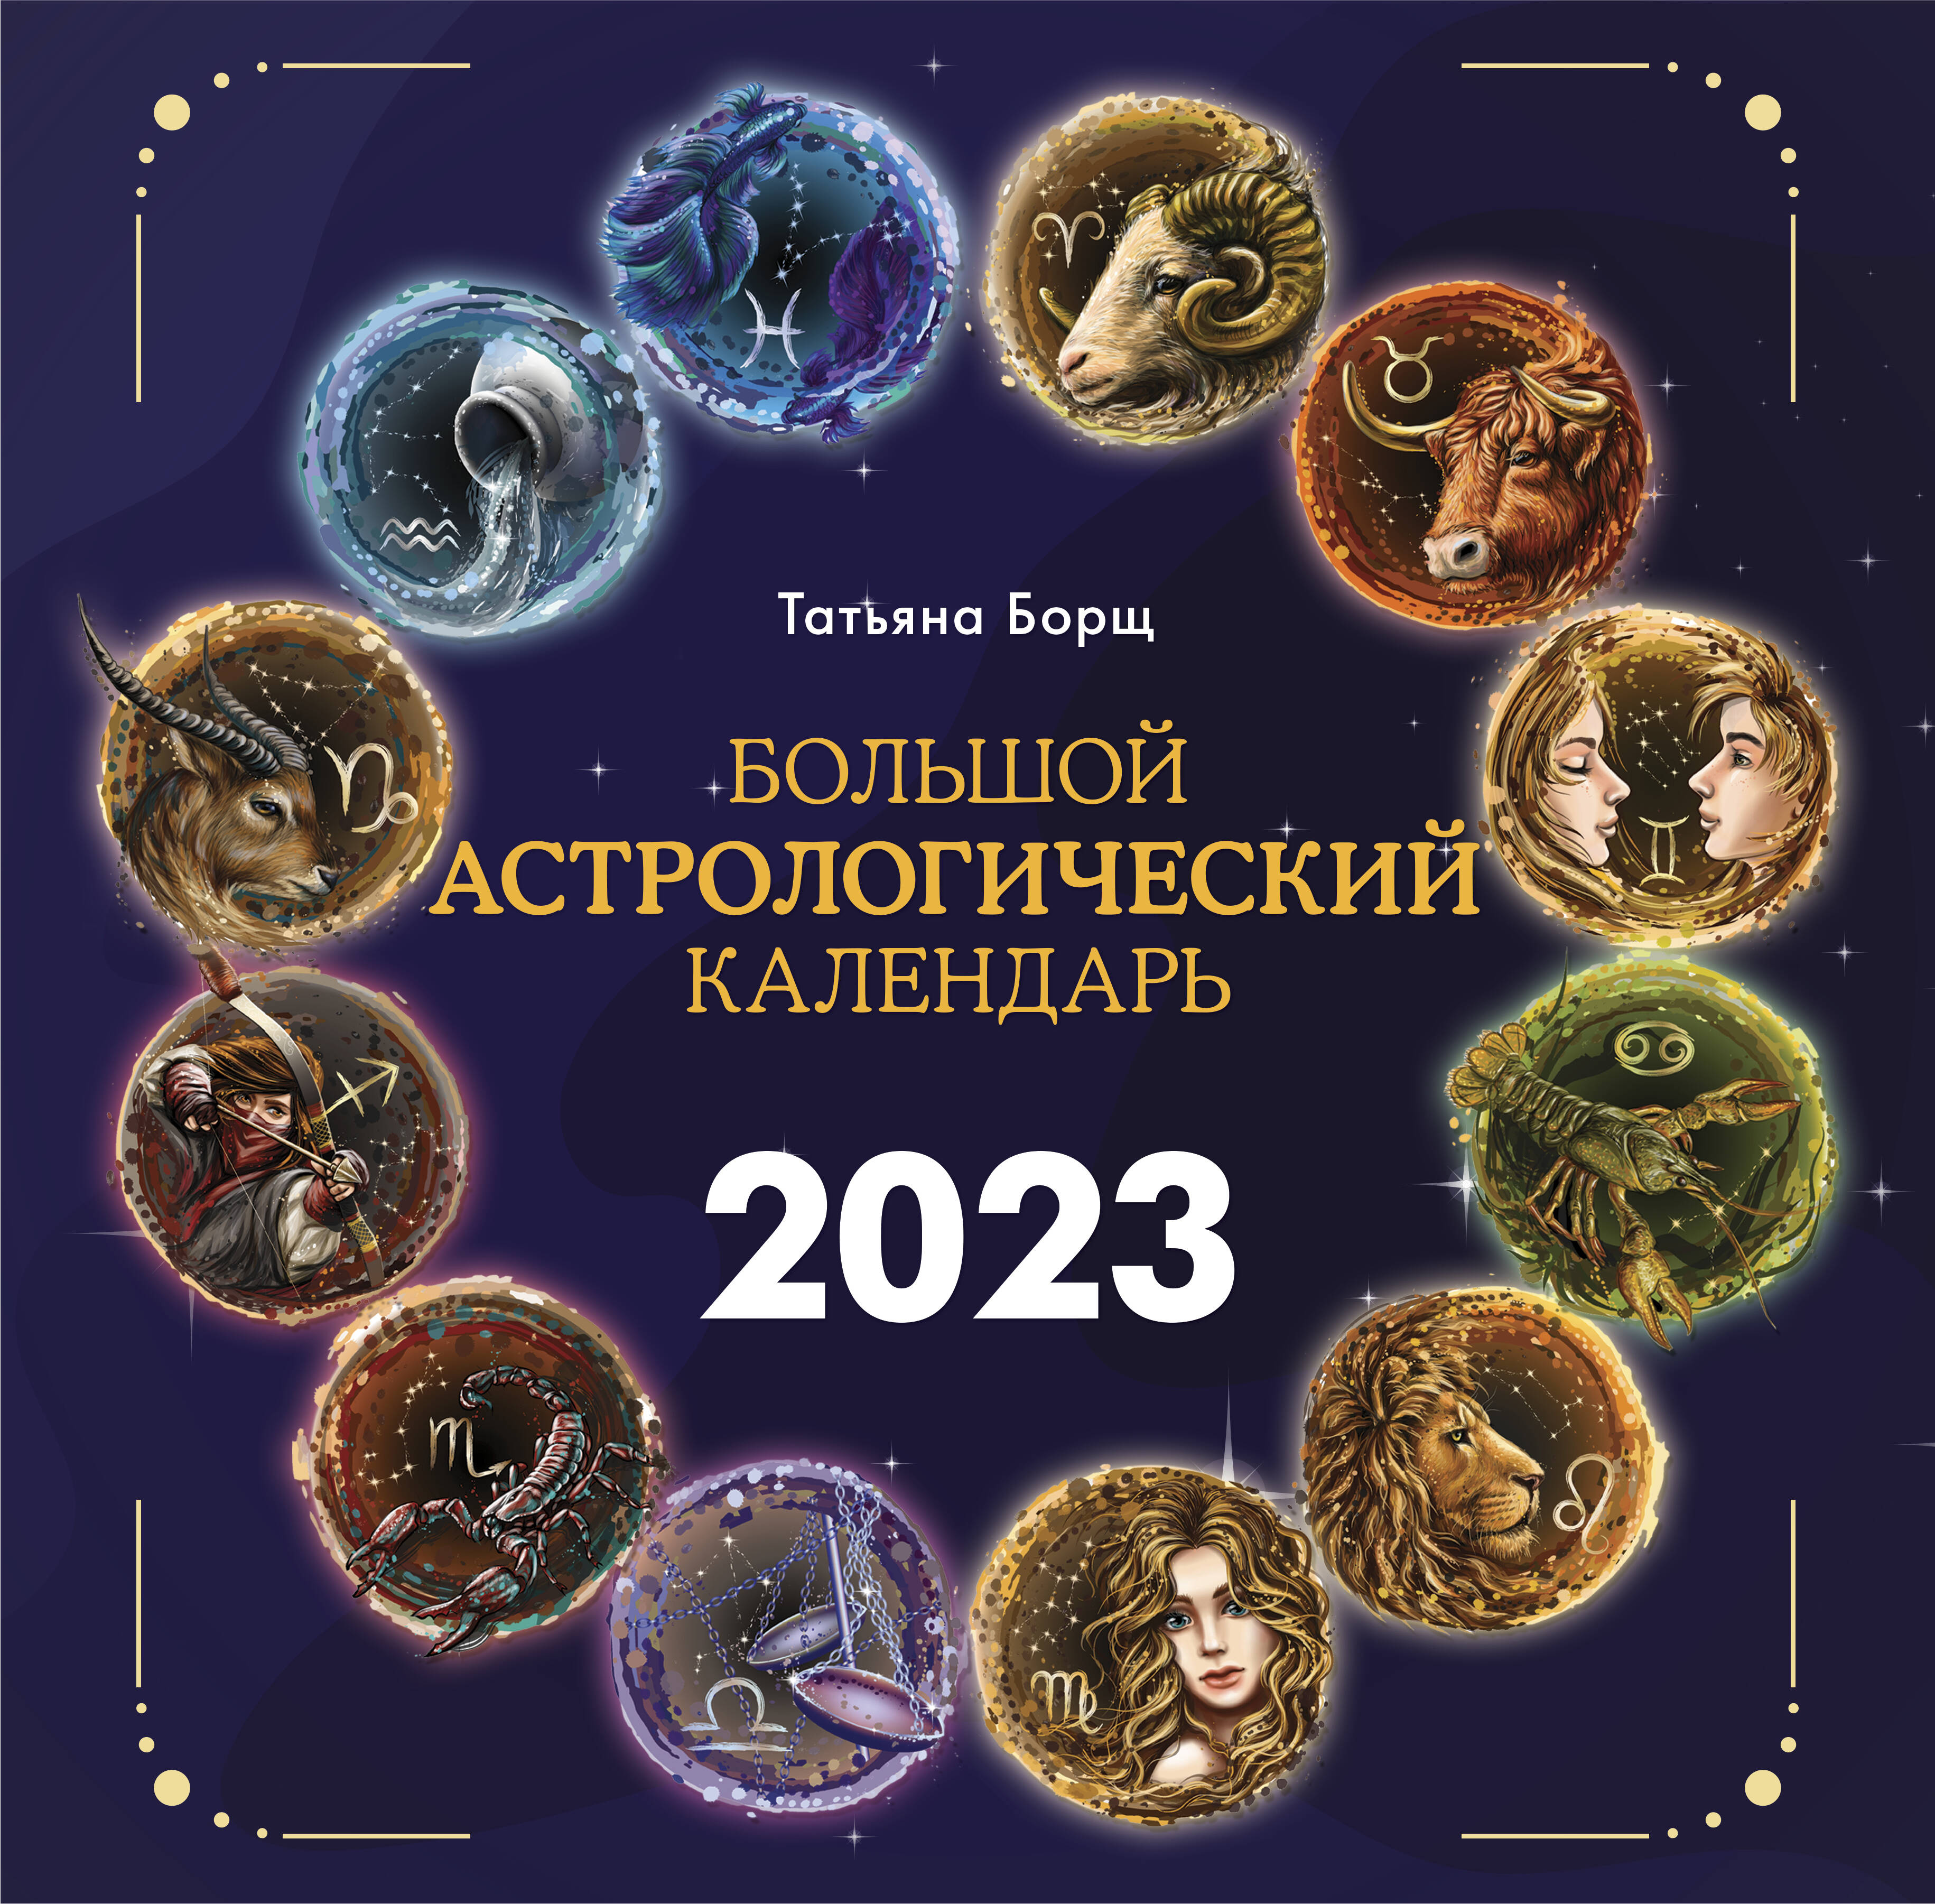 Астрологический календарь на апрель 2024. Астрологический календарь на 2023. Астрологический календарь на 2023 год. Астрологический календарь Зараева на 2023 год.